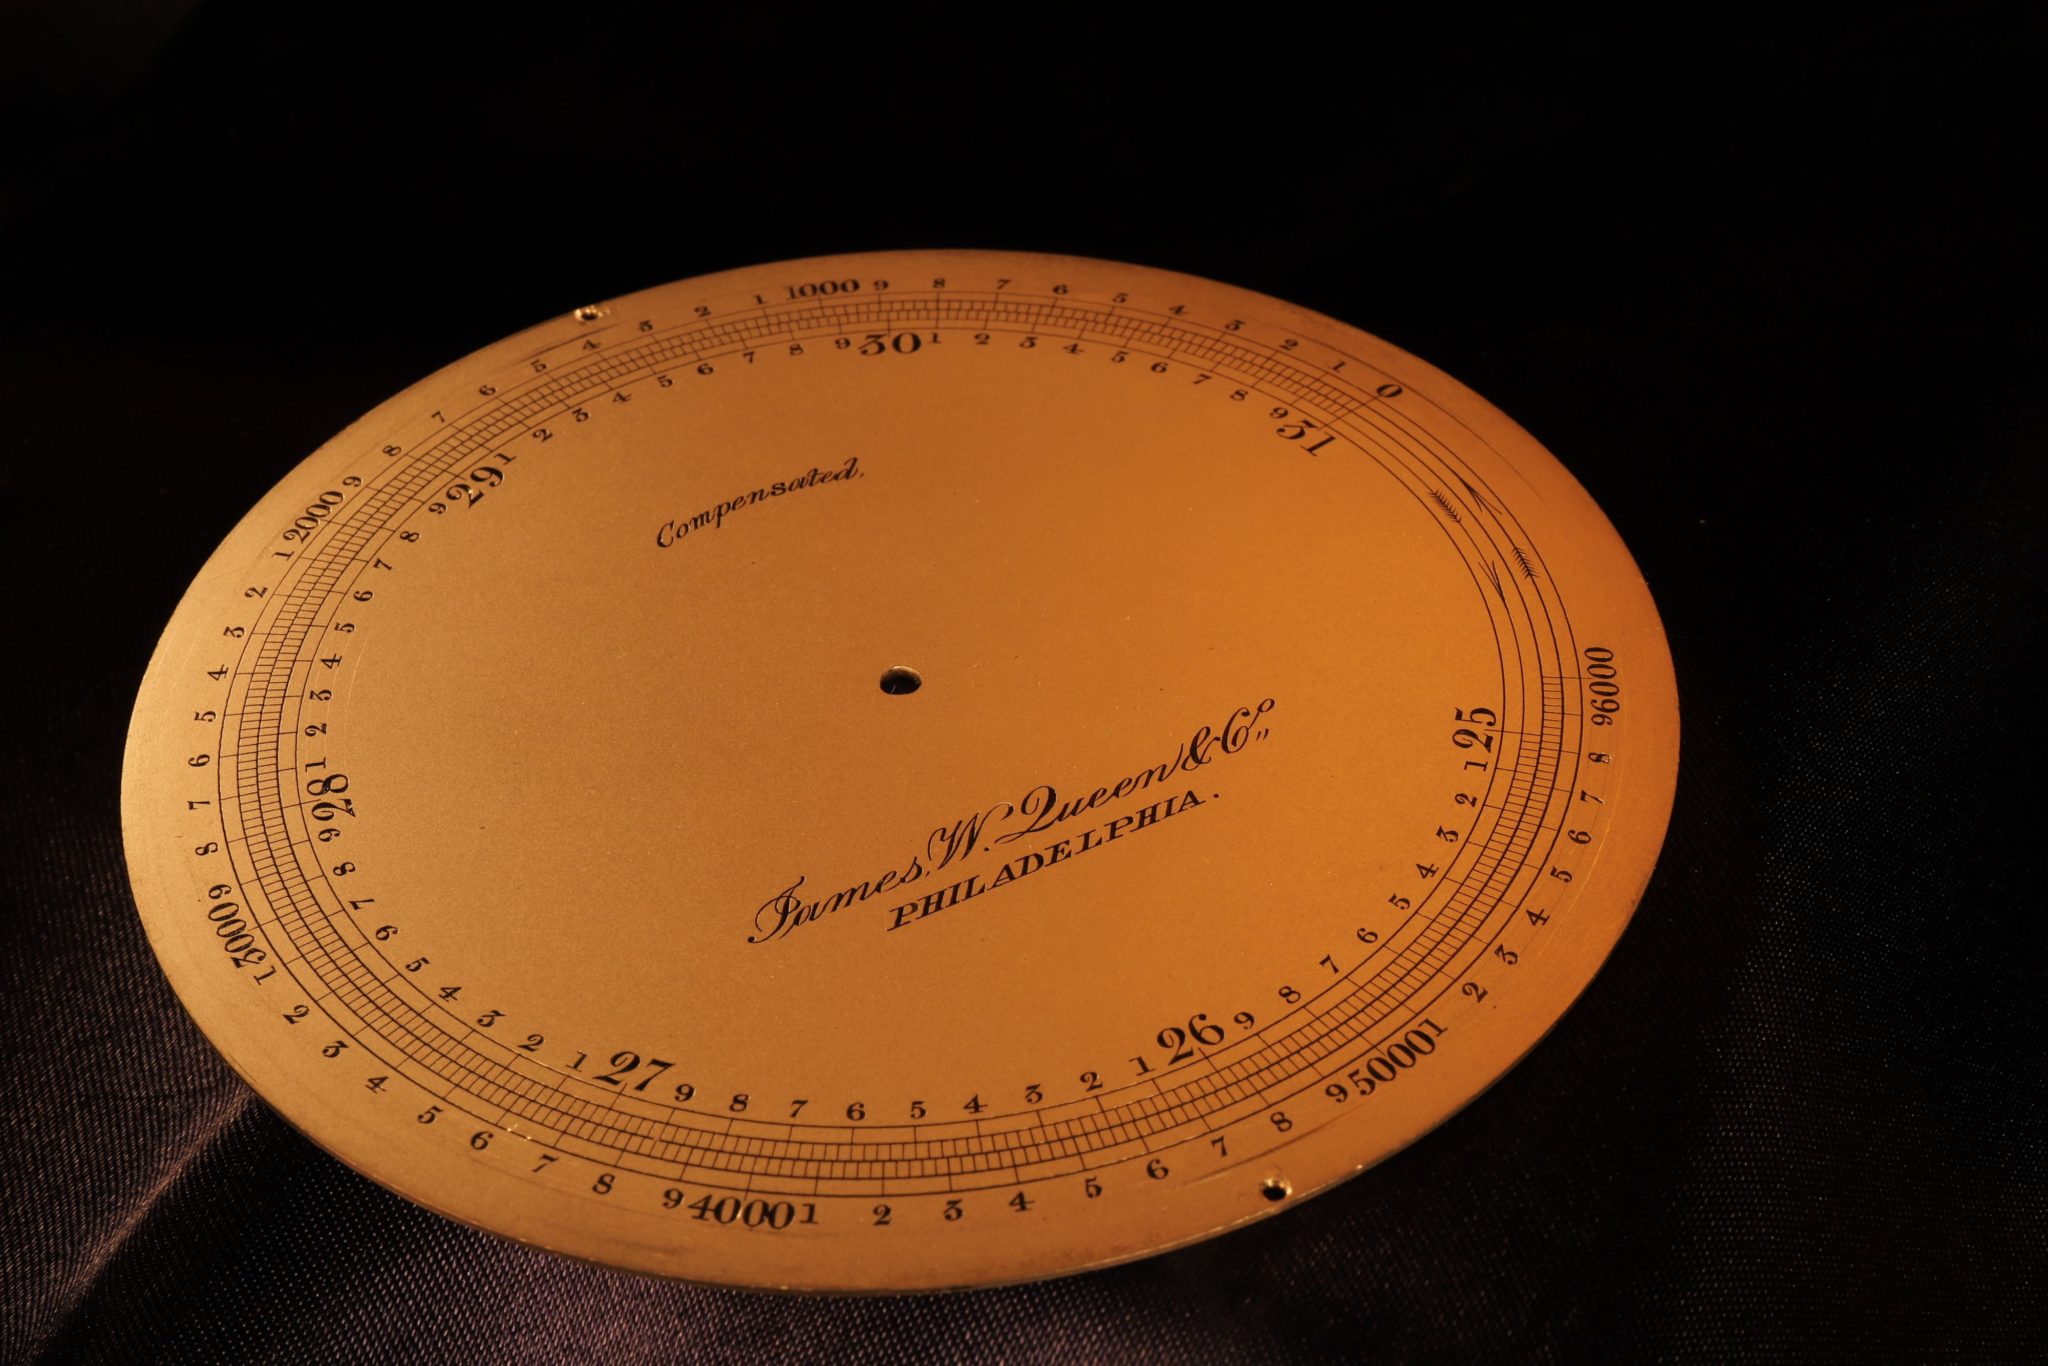 Image of Explorers Barometer c1880